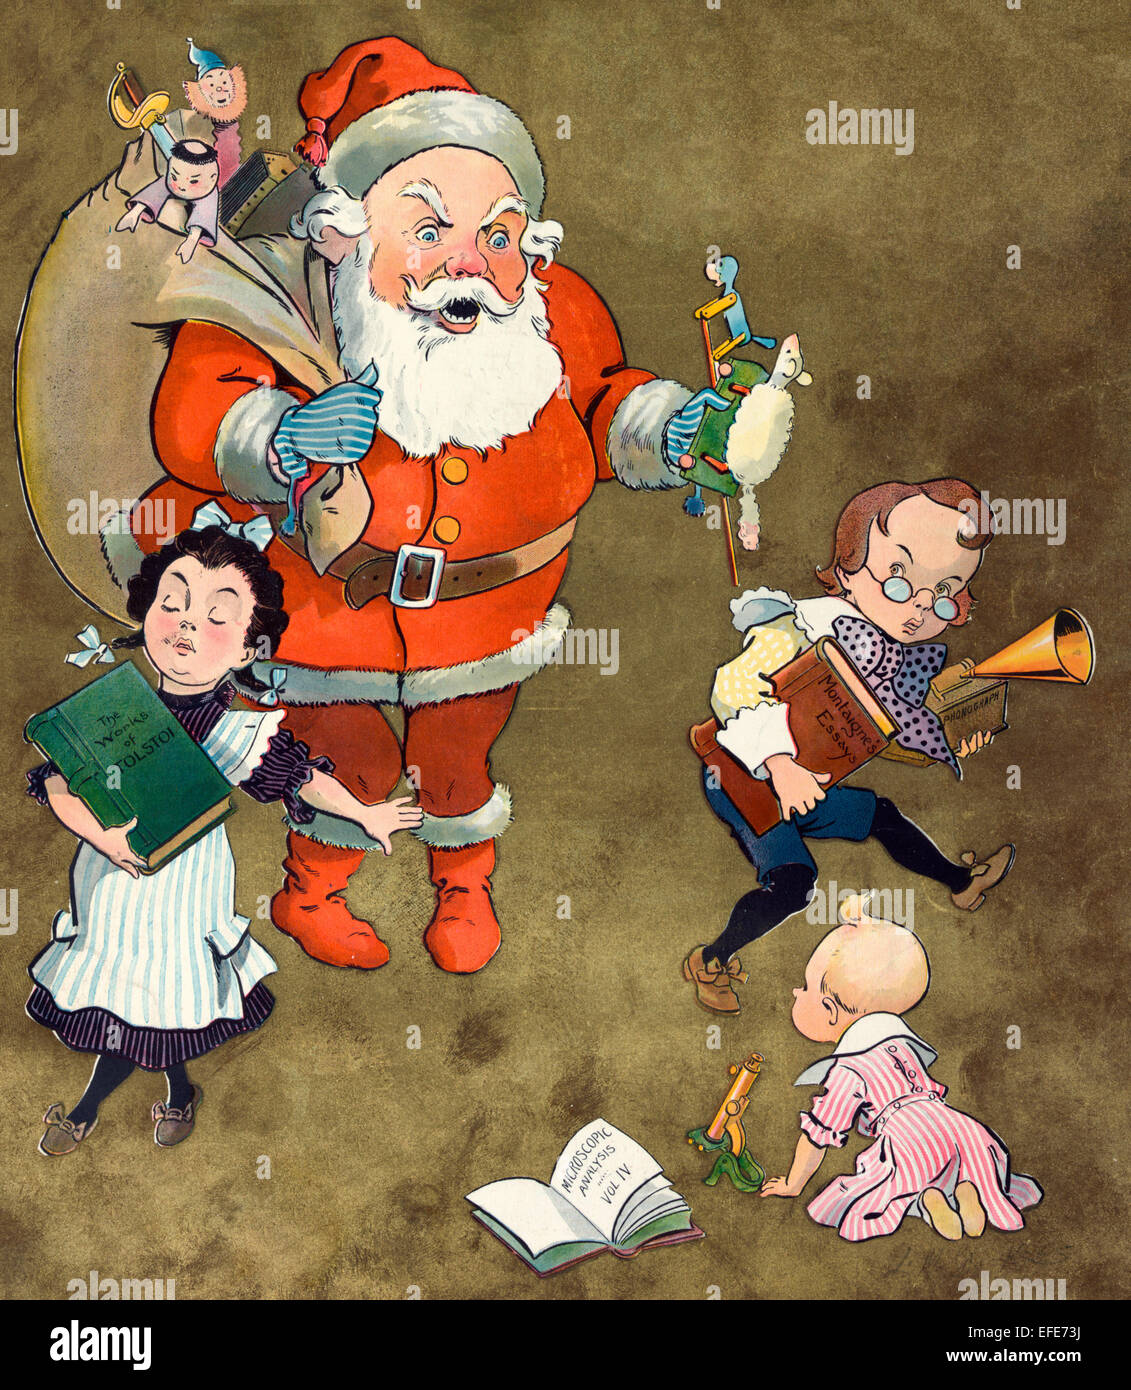 Noël 1901 - L'illustration montre le Père Noël avec un sac rempli de jouets et deux enfants et un nourrisson ; ils ont choisi des livres 'Les oeuvres de Tolstoi', 'Montaigne', d'essais et d'analyse, vol. icroscopic "IV" plutôt que les jouets comme leurs présents. Le garçon a également sélectionné un phonographe' et 'l'enfant a un microscope Banque D'Images